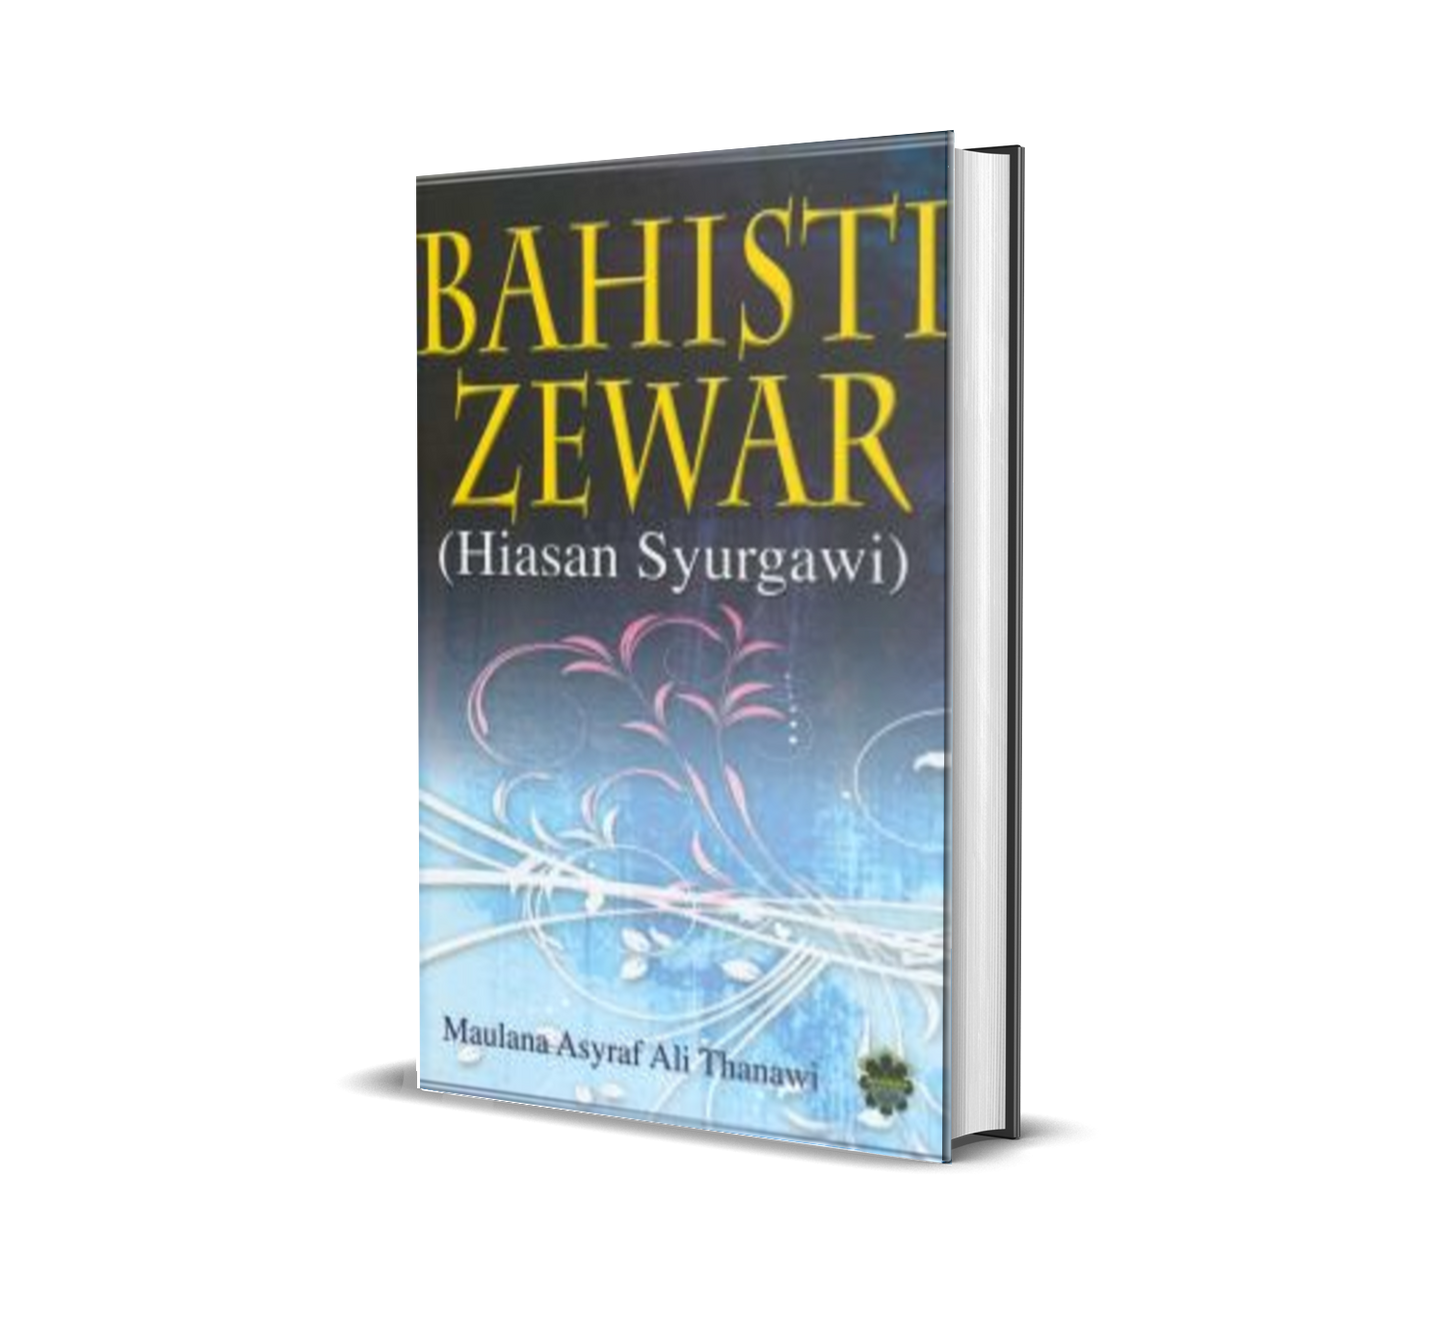 Bahisti Zewar (Hiasan Syurgawi)